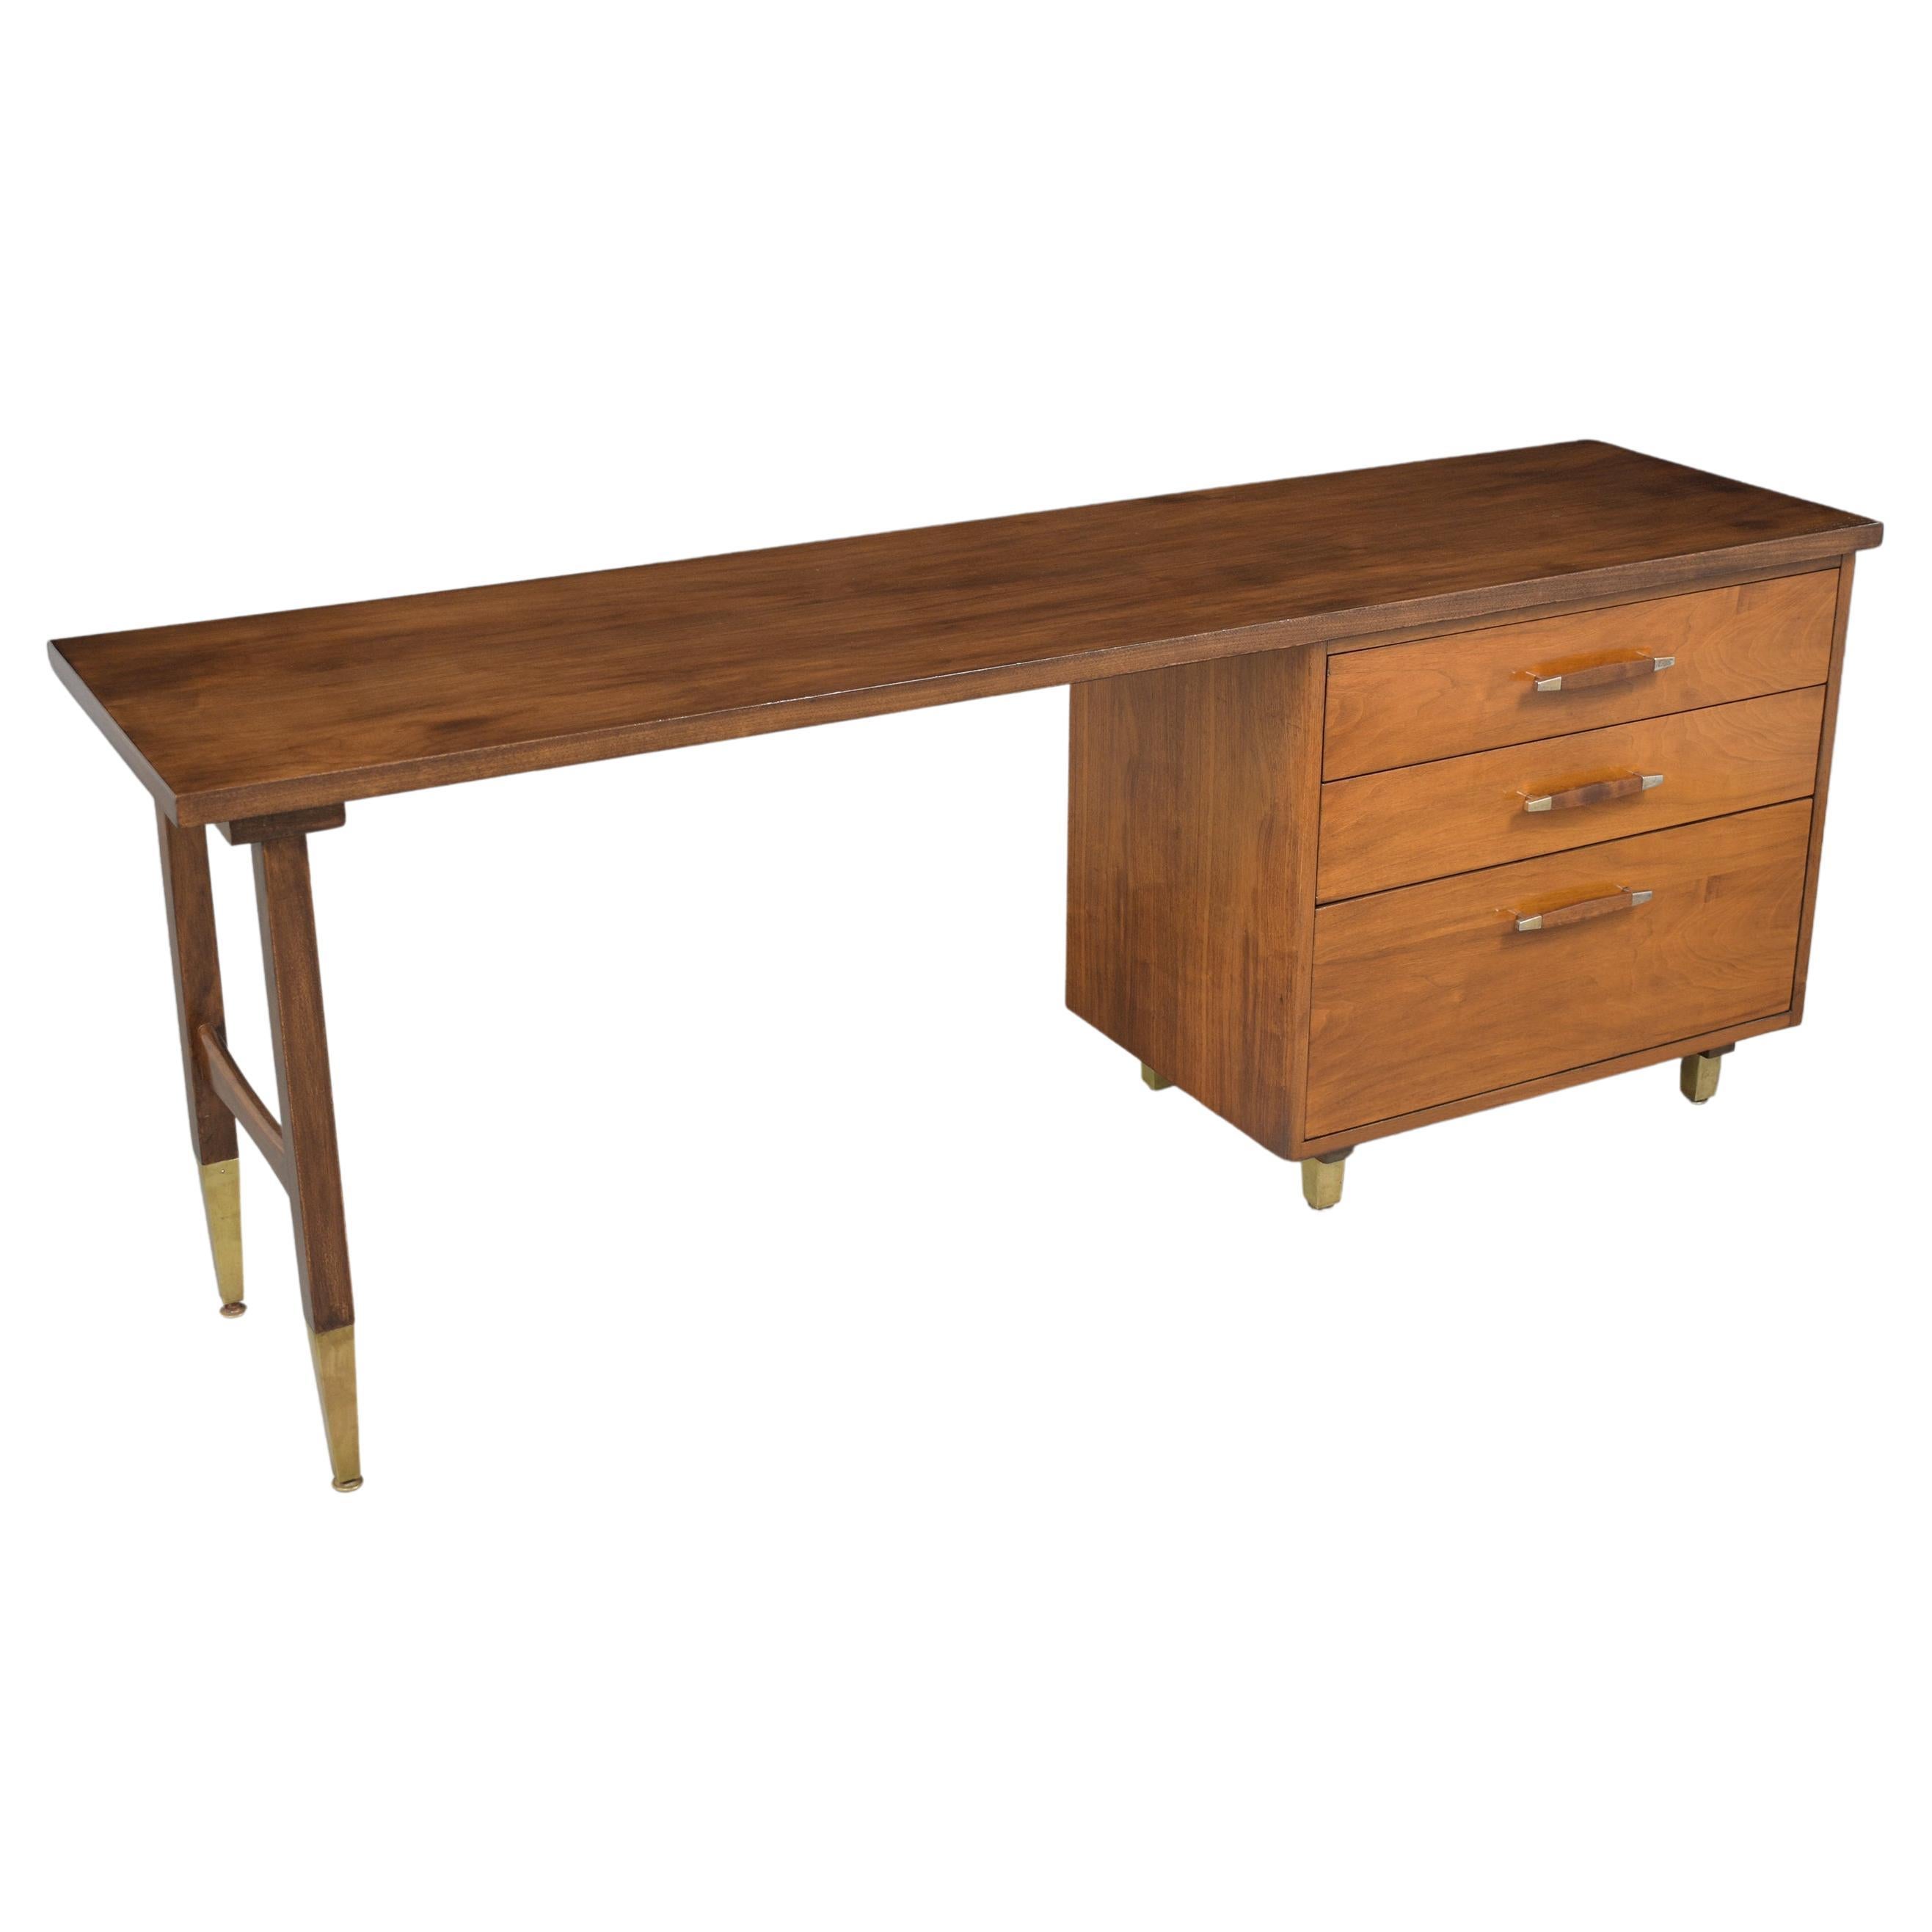 Erleben Sie die zeitlose Eleganz unseres Mid-Century Modern Executive Desk aus den 1960er Jahren, der meisterhaft aus ausgesuchtem Walnussholz gefertigt ist. Dieser Vintage-Schreibtisch, der von unseren engagierten Handwerkern in tadellosem Zustand